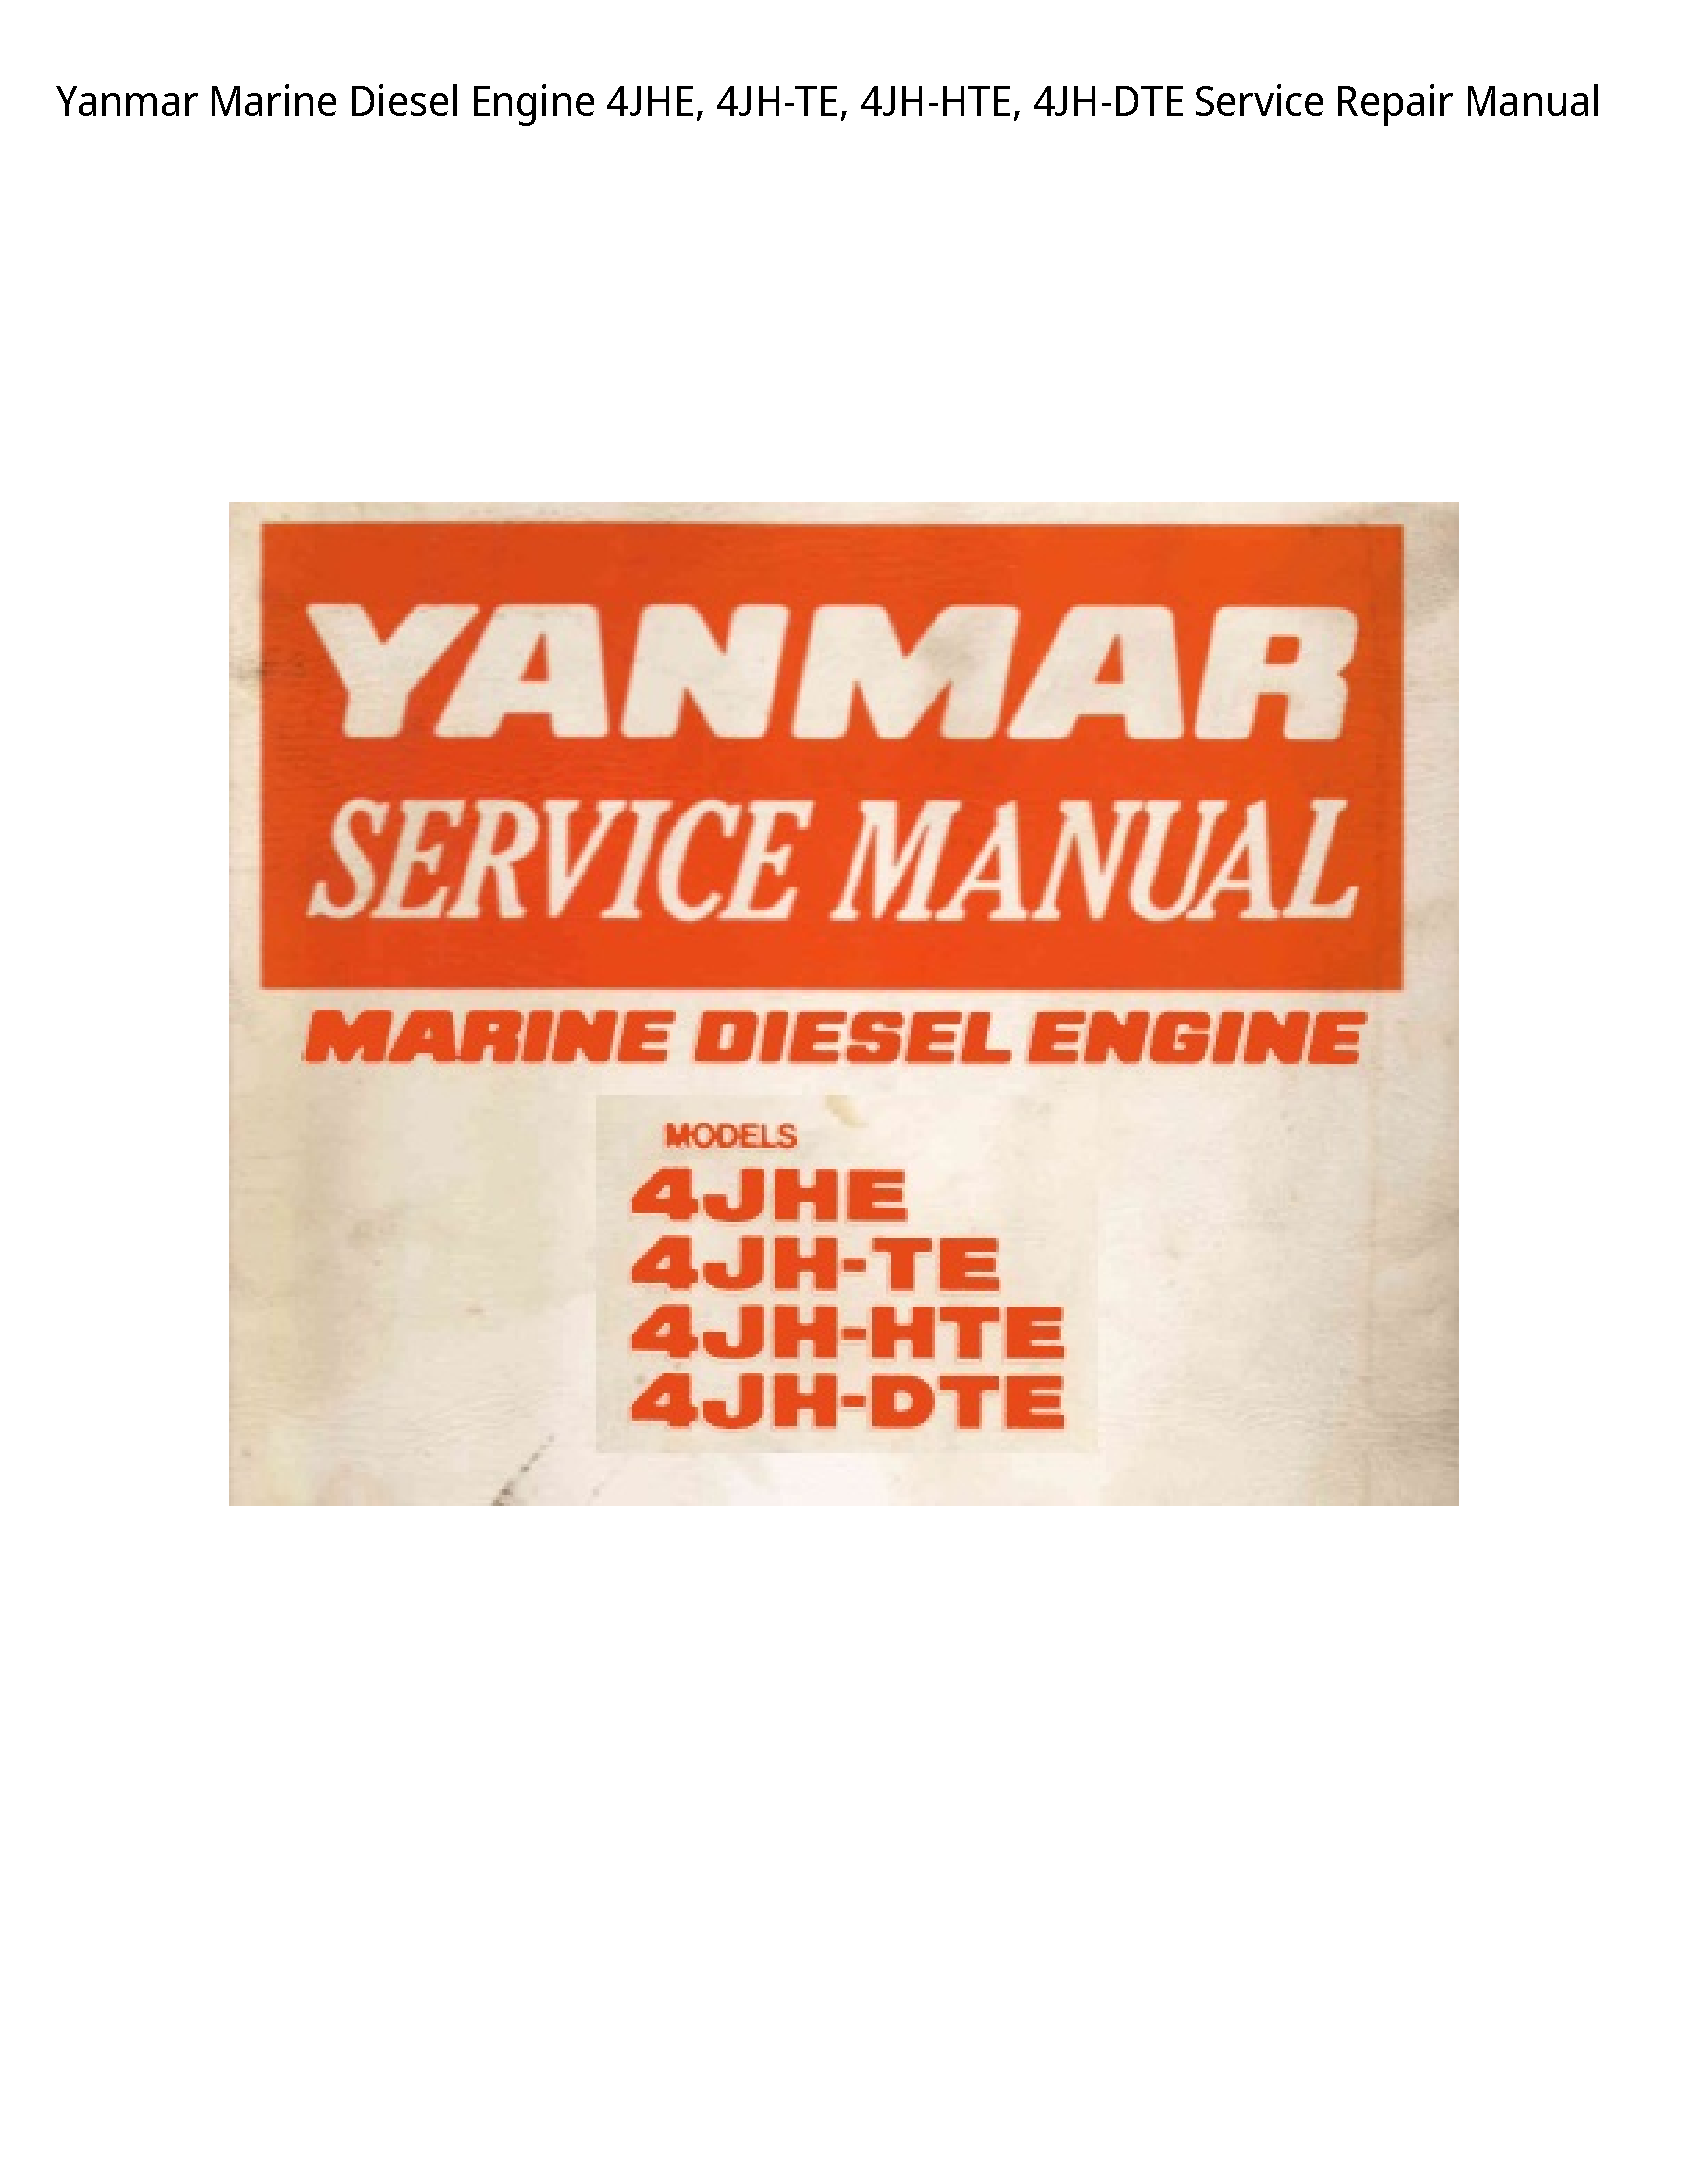 Yanmar 4JHE Marine Diesel Engine manual